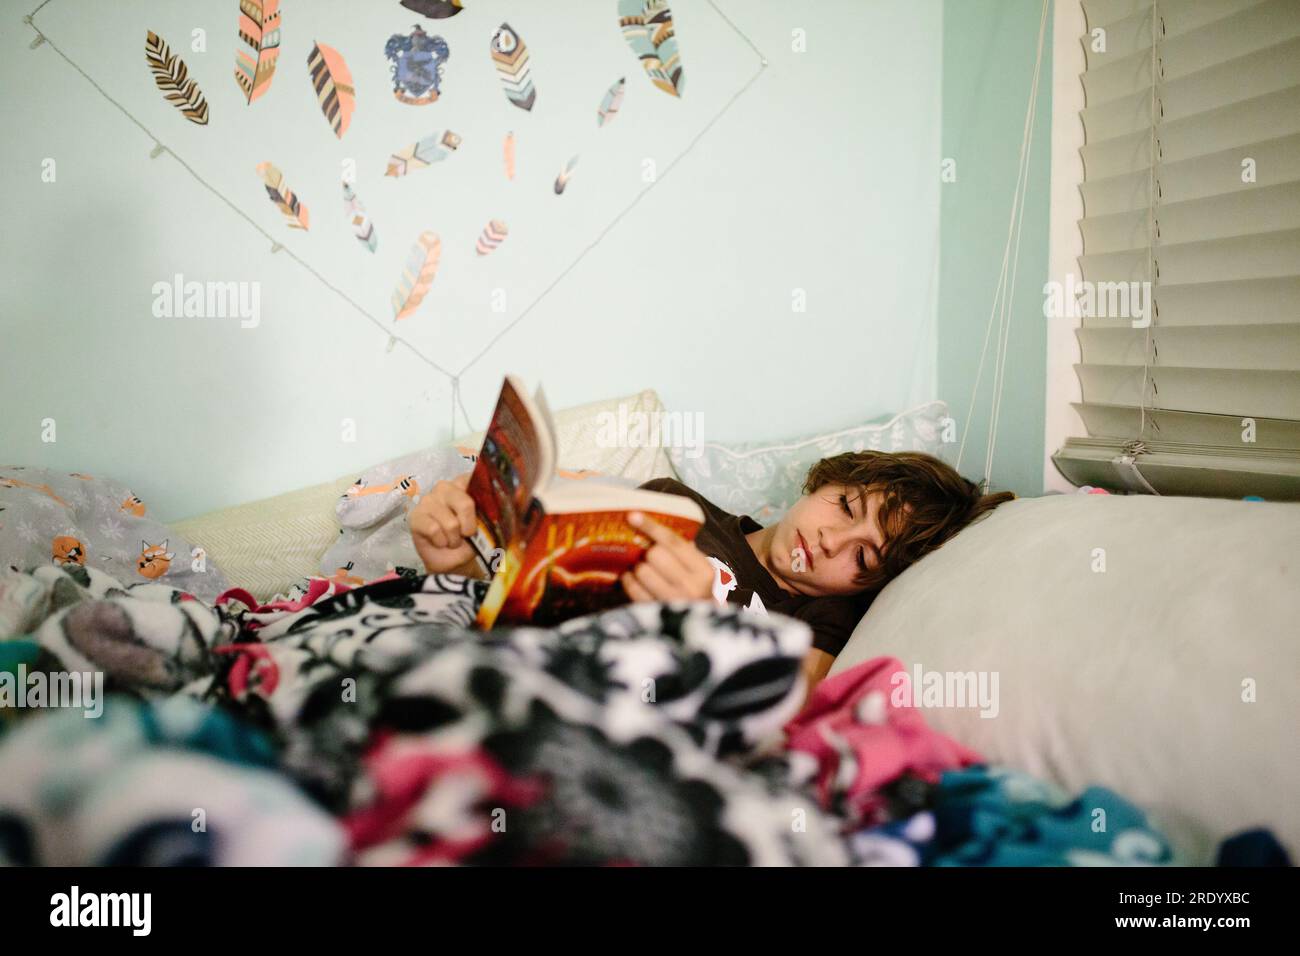 Adolescente allongée dans son lit lisant un livre avant le coucher Banque D'Images